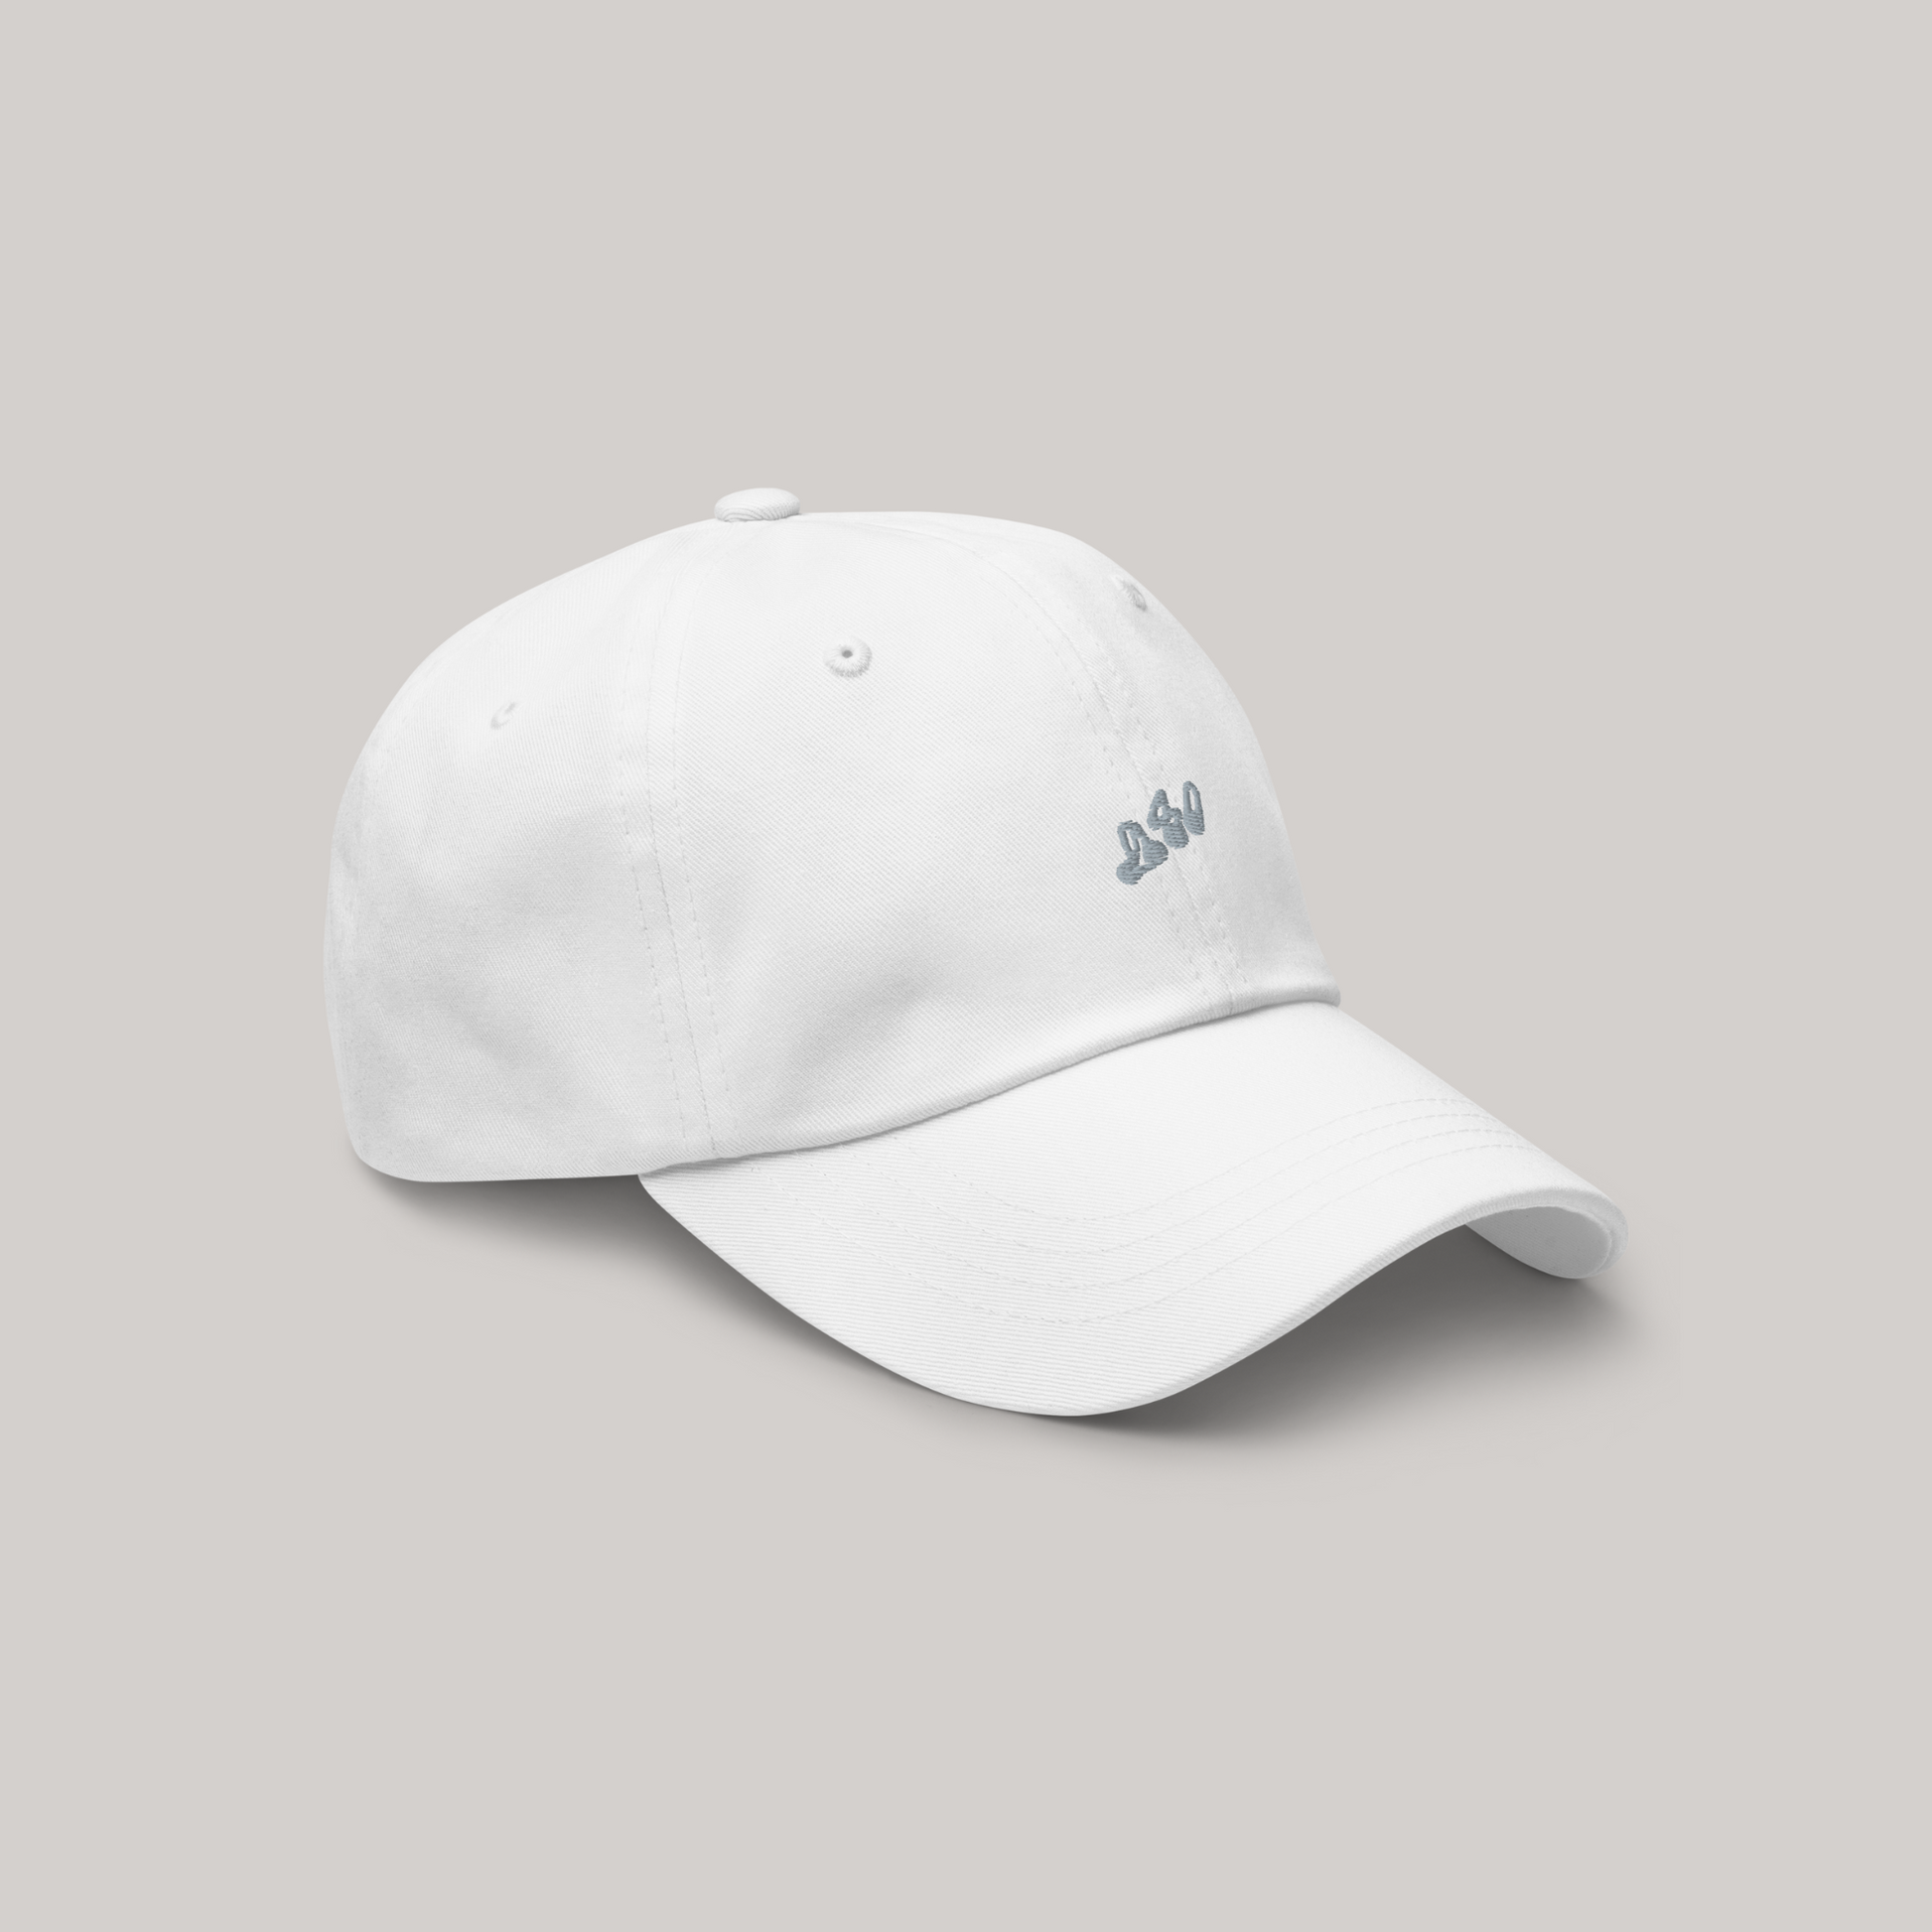 Side view of streetwear white cap hat, 980 grey embroidery, aeterius luxury streetwear headwear